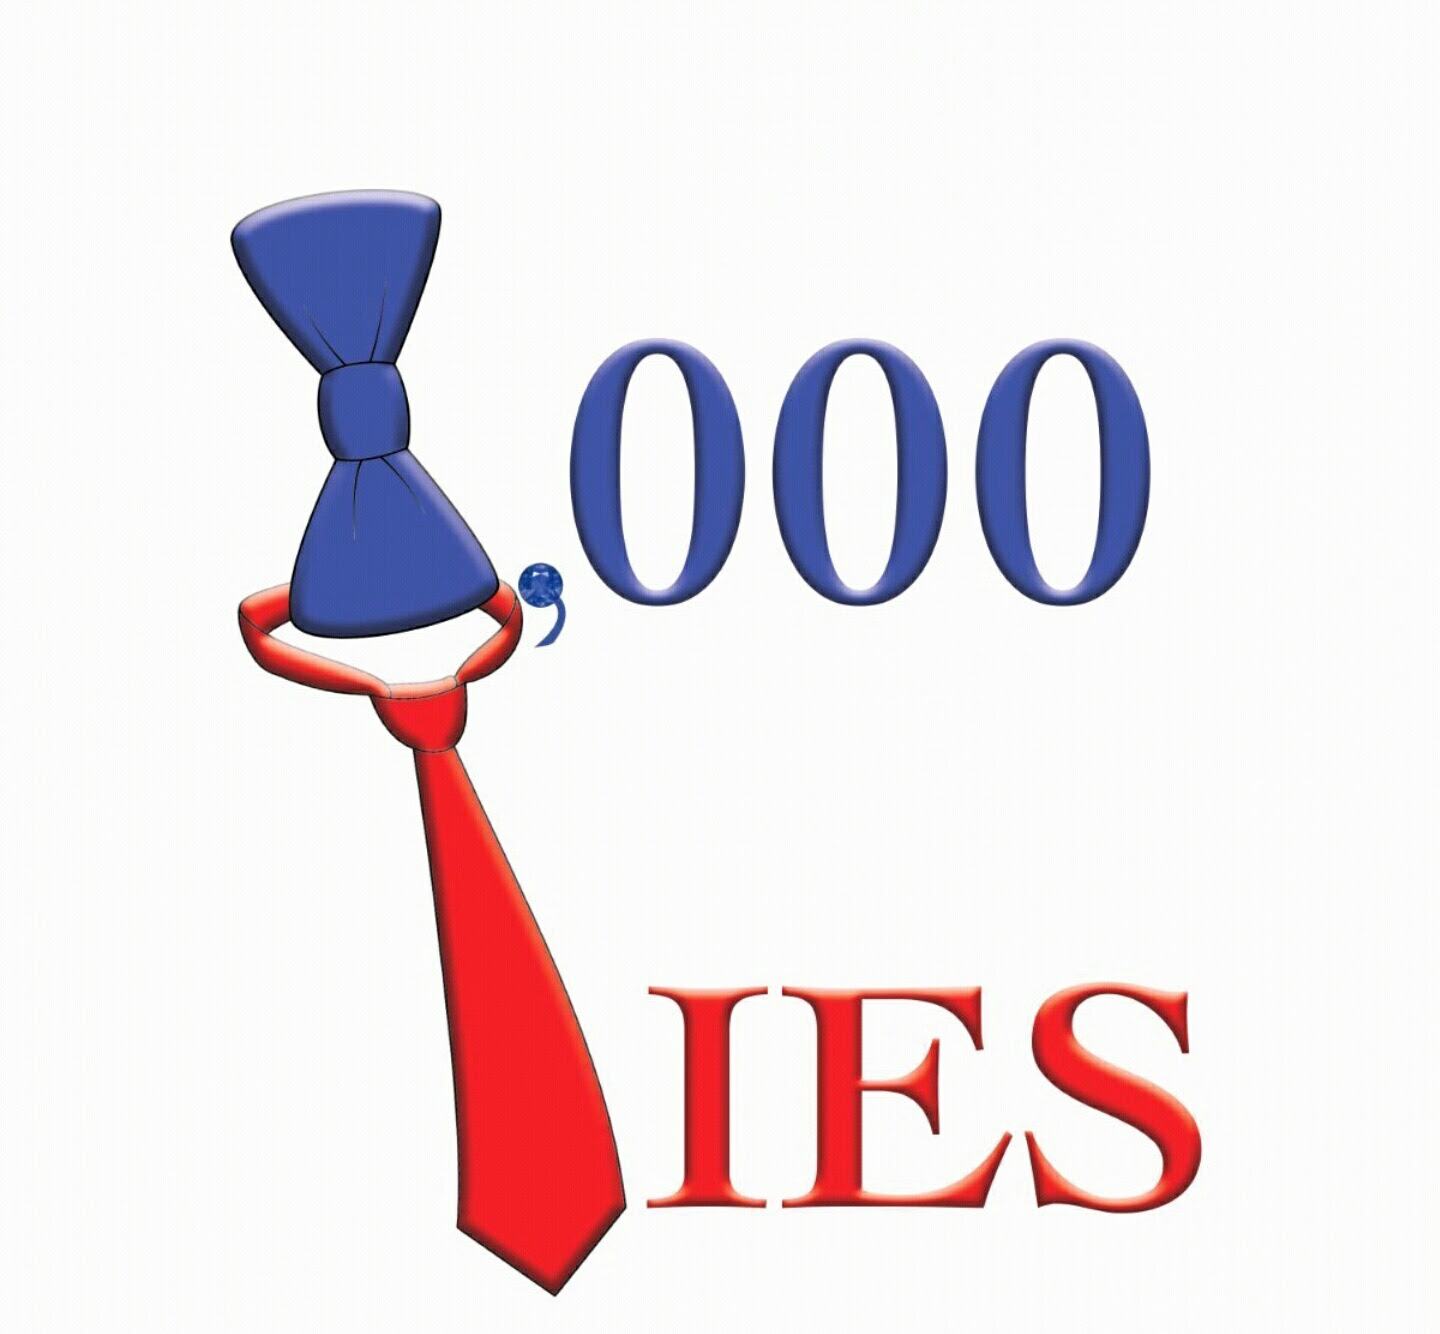 1,000 Ties logo